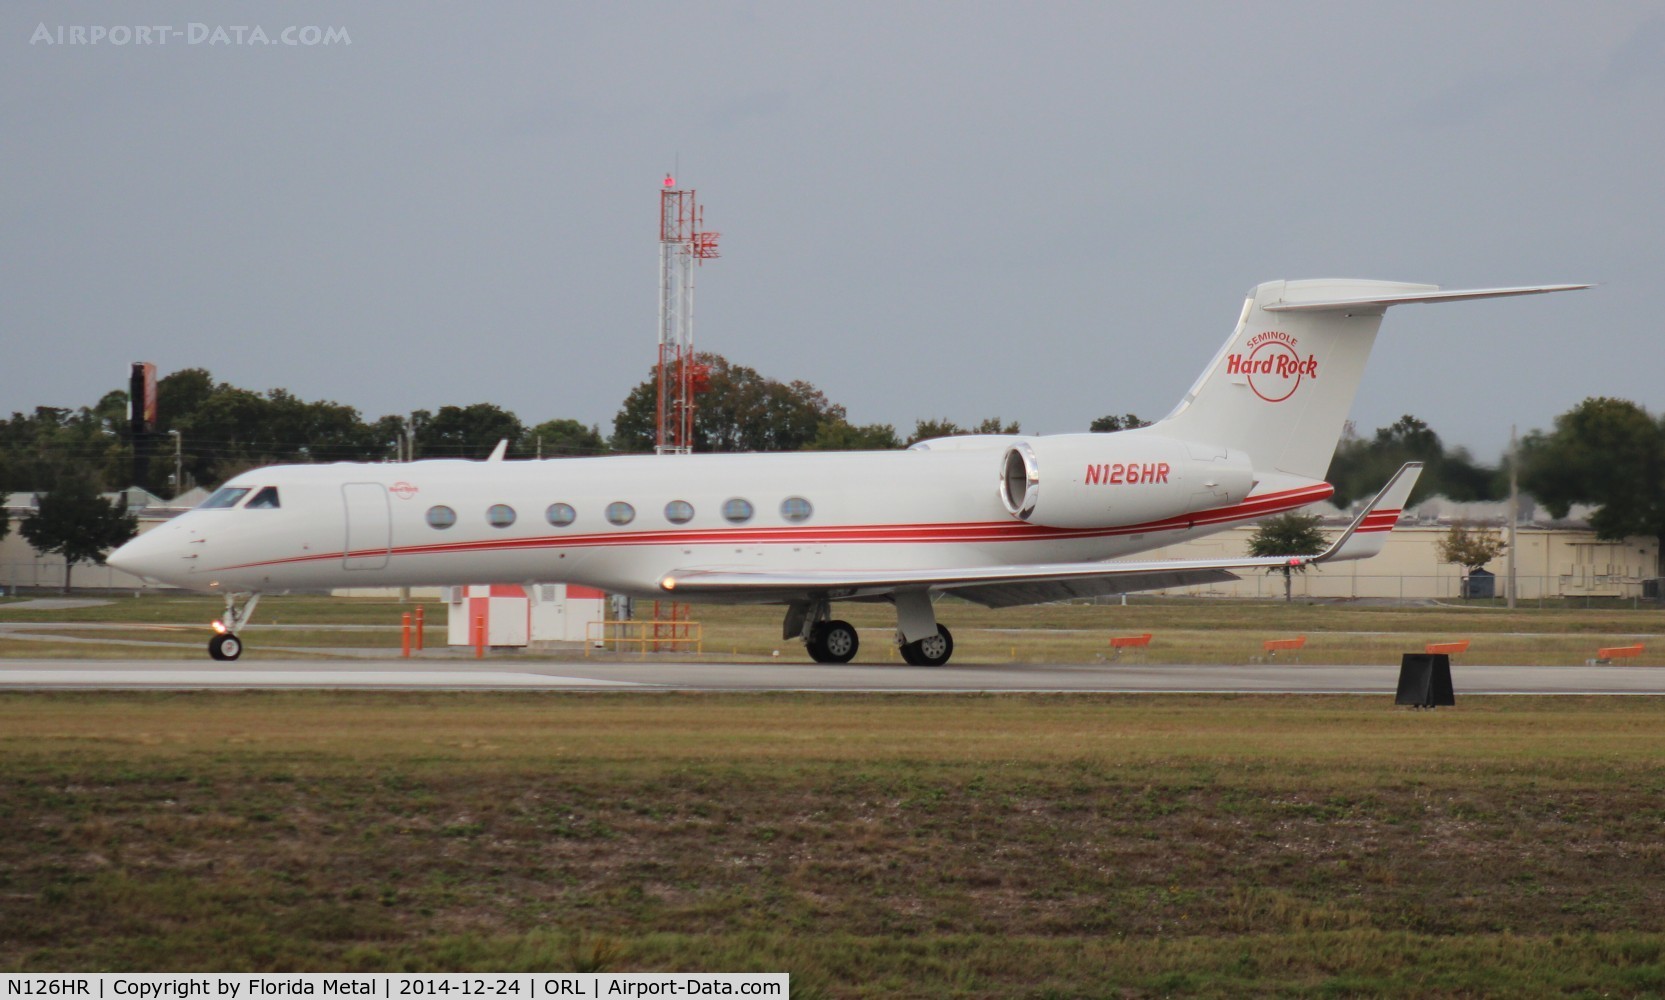 N126HR, 2013 Gulfstream Aerospace GV-SP (G550) C/N 5436, Seminole Tribe of Florida G550